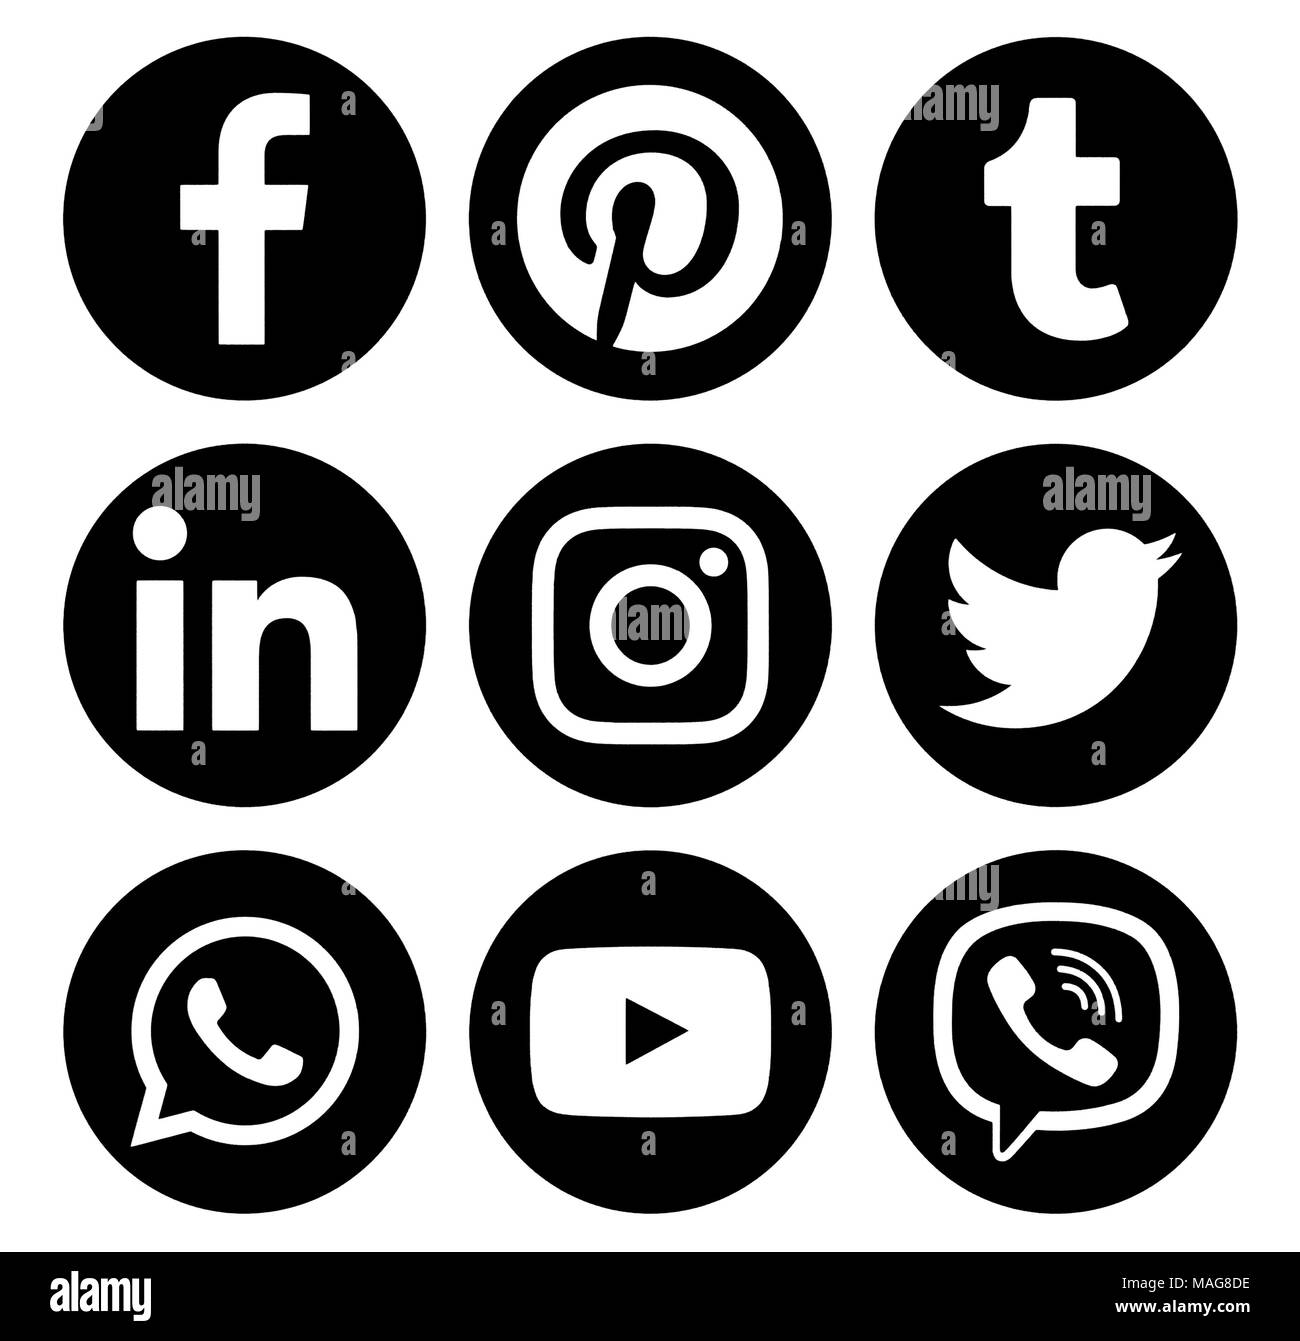 Kiev, Ukraine - le 16 janvier 2018 : cercle populaires médias sociaux logos noirs imprimés sur du papier : Facebook, Twitter, Pinterest, Instagram, LinkedIn, Viber, Banque D'Images